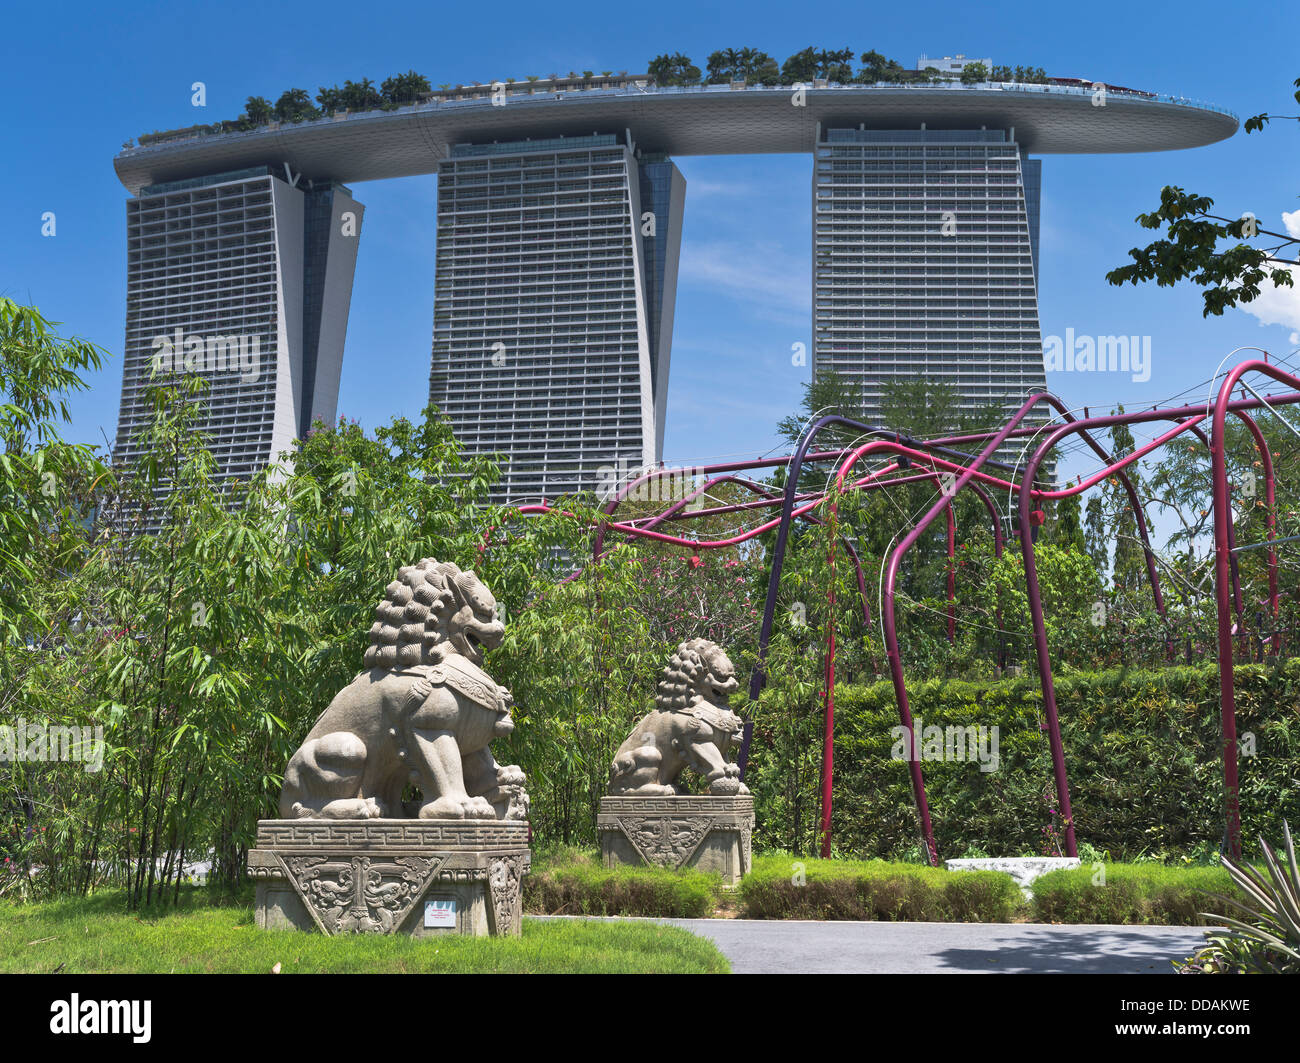 dh GARDENS À CÔTÉ DES JARDINS DE LA BAIE DE SINGAPOUR passerelle fu dog statue de lion statues gratte-ciel jardin gratte-ciel parc Banque D'Images